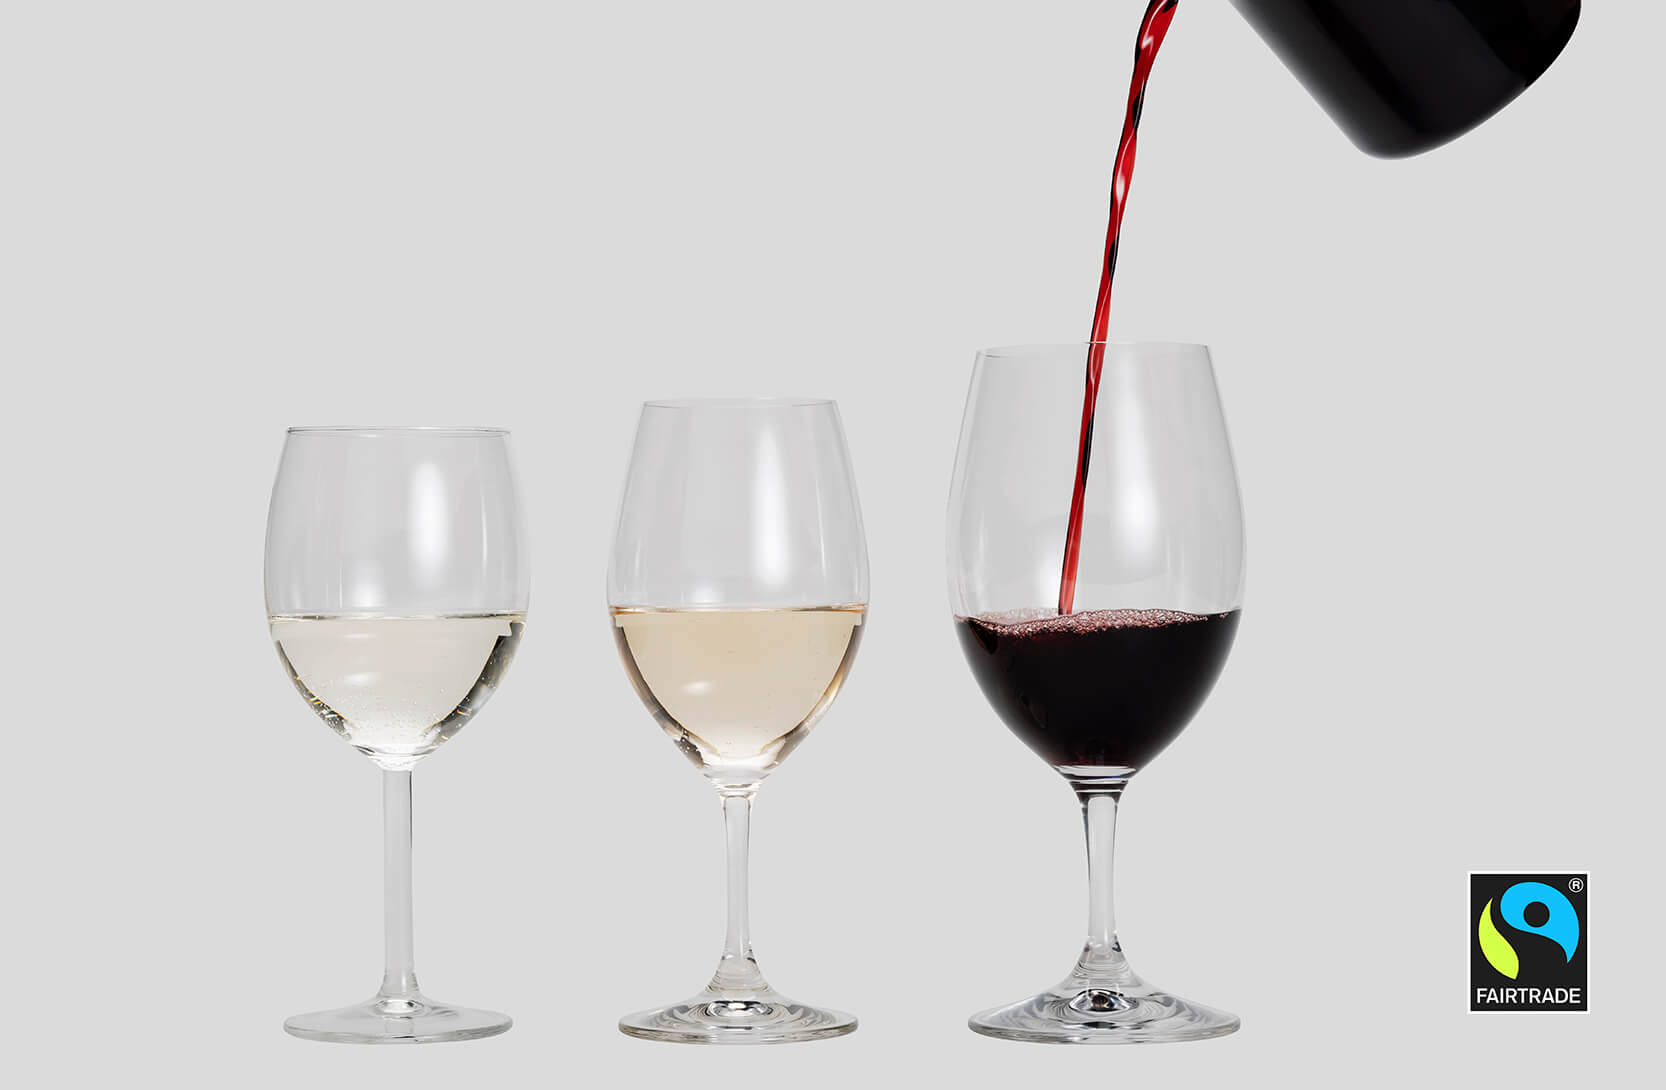 Reilun kaupan viiniä löytyy valkoviininä, roseeviininä ja punaviininä. Kuvassa kolme läpinäkyvää lasia, johon oikealla olevaan lasiin kaadetaan punaviiniä.